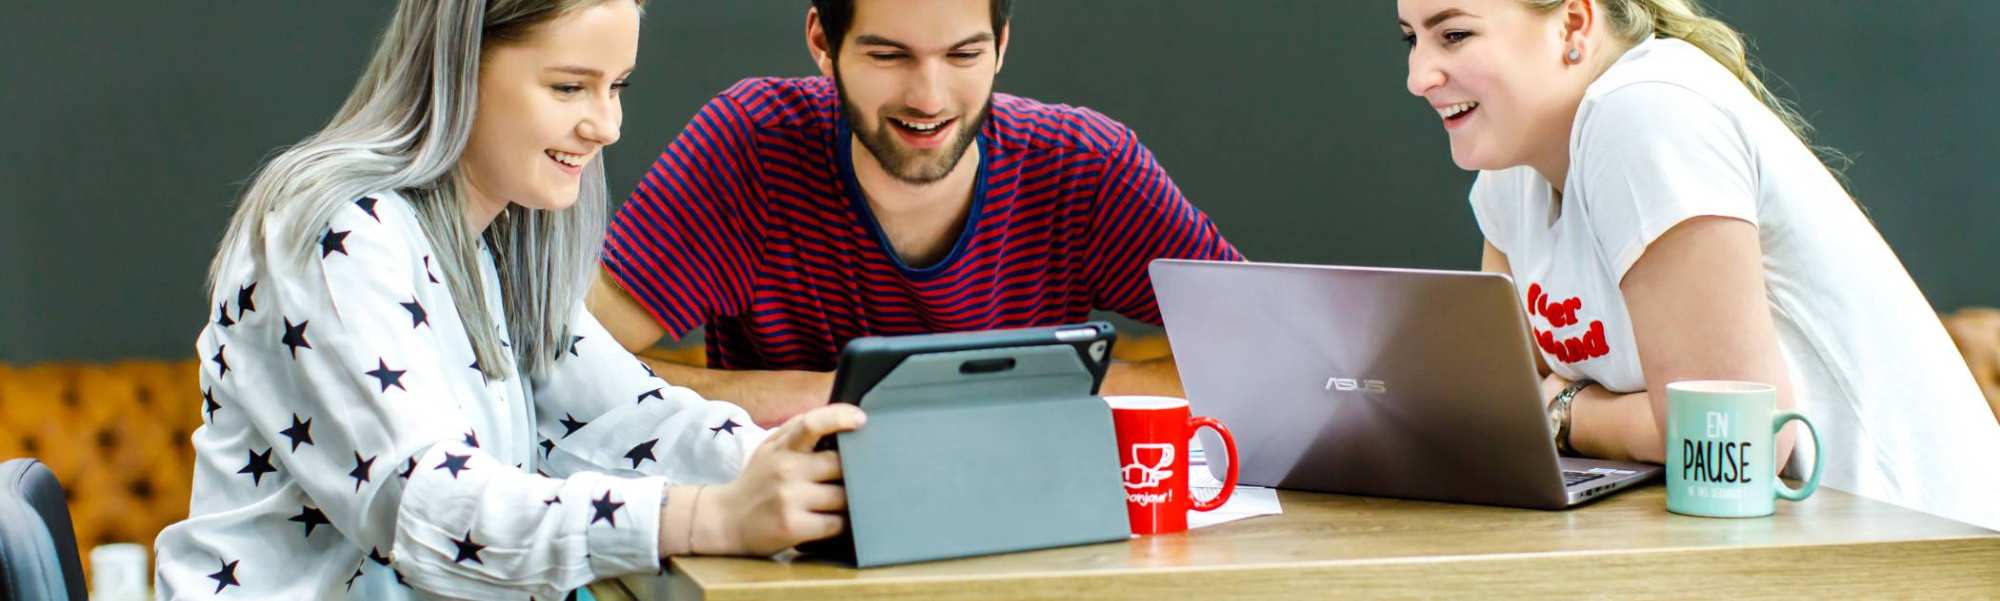 studenten met laptop en ipad